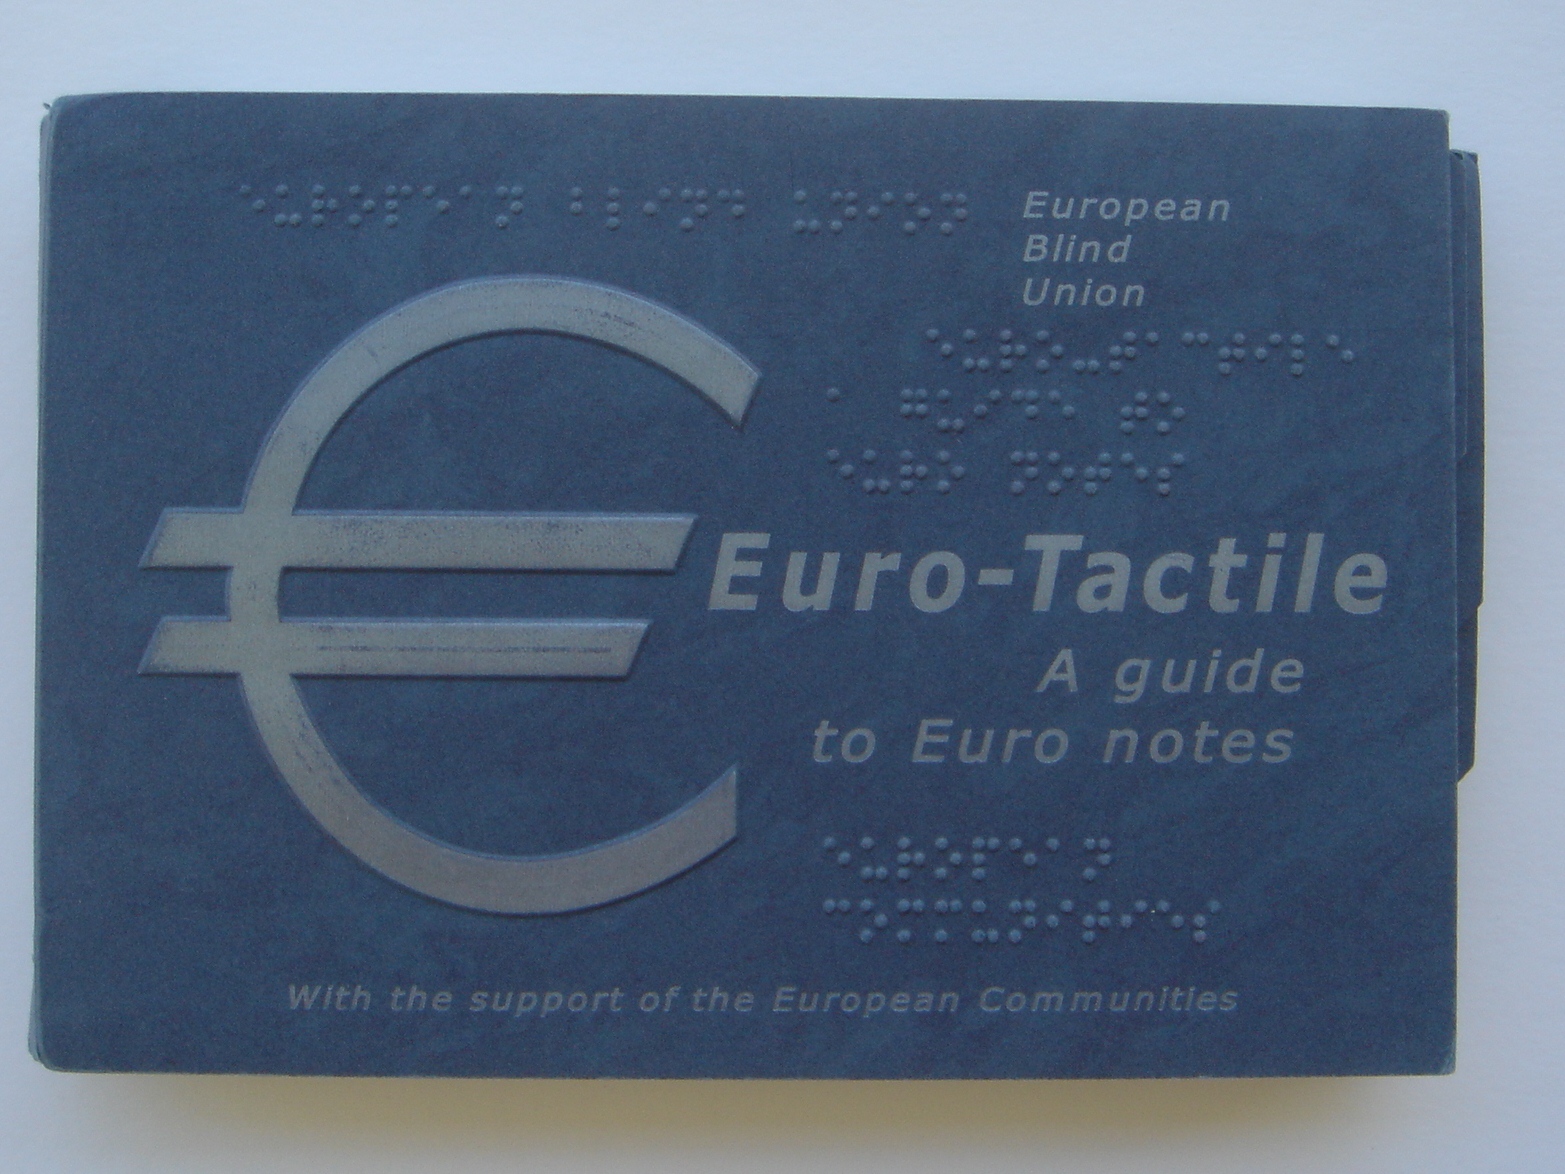 Copertina del libro tattile "Euro tactile"